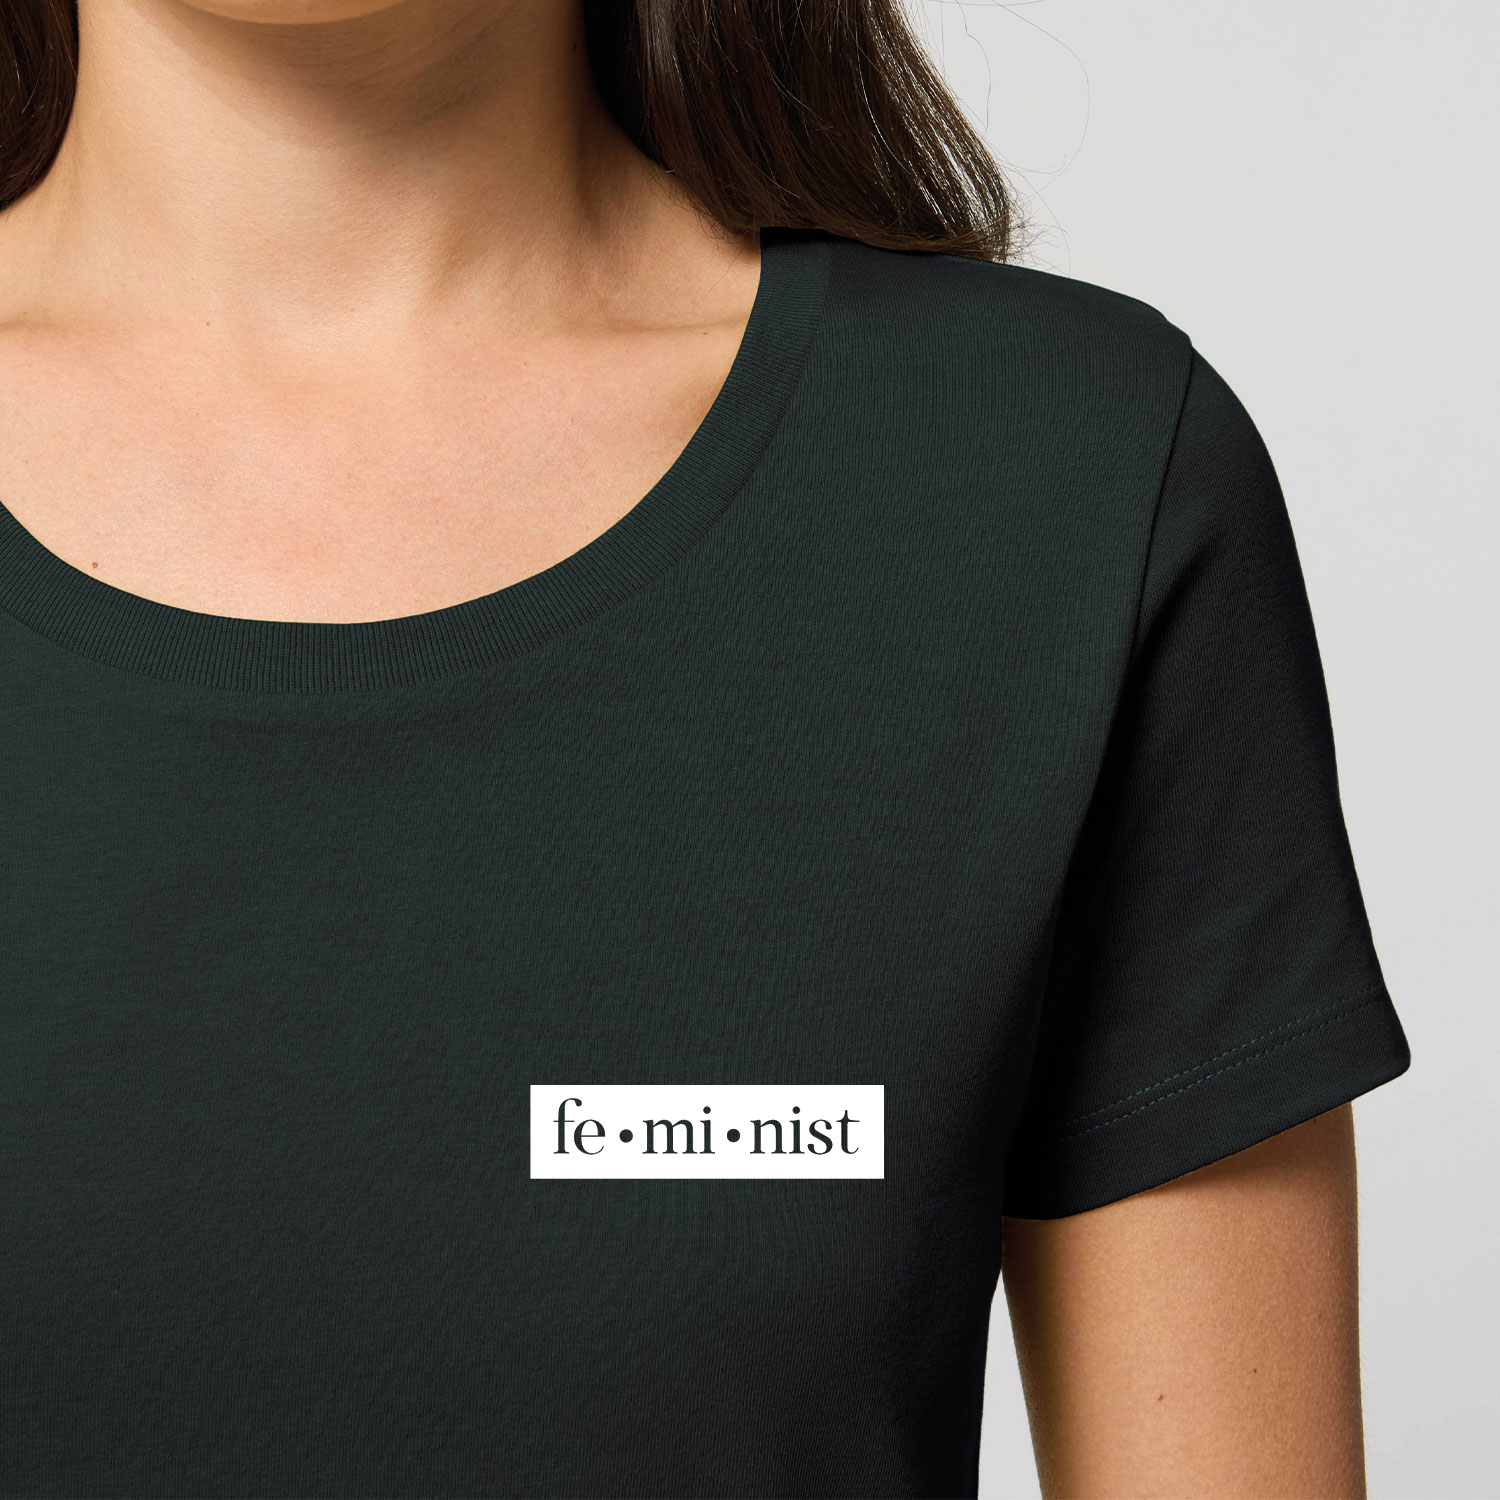 T-Shirt - Feminist